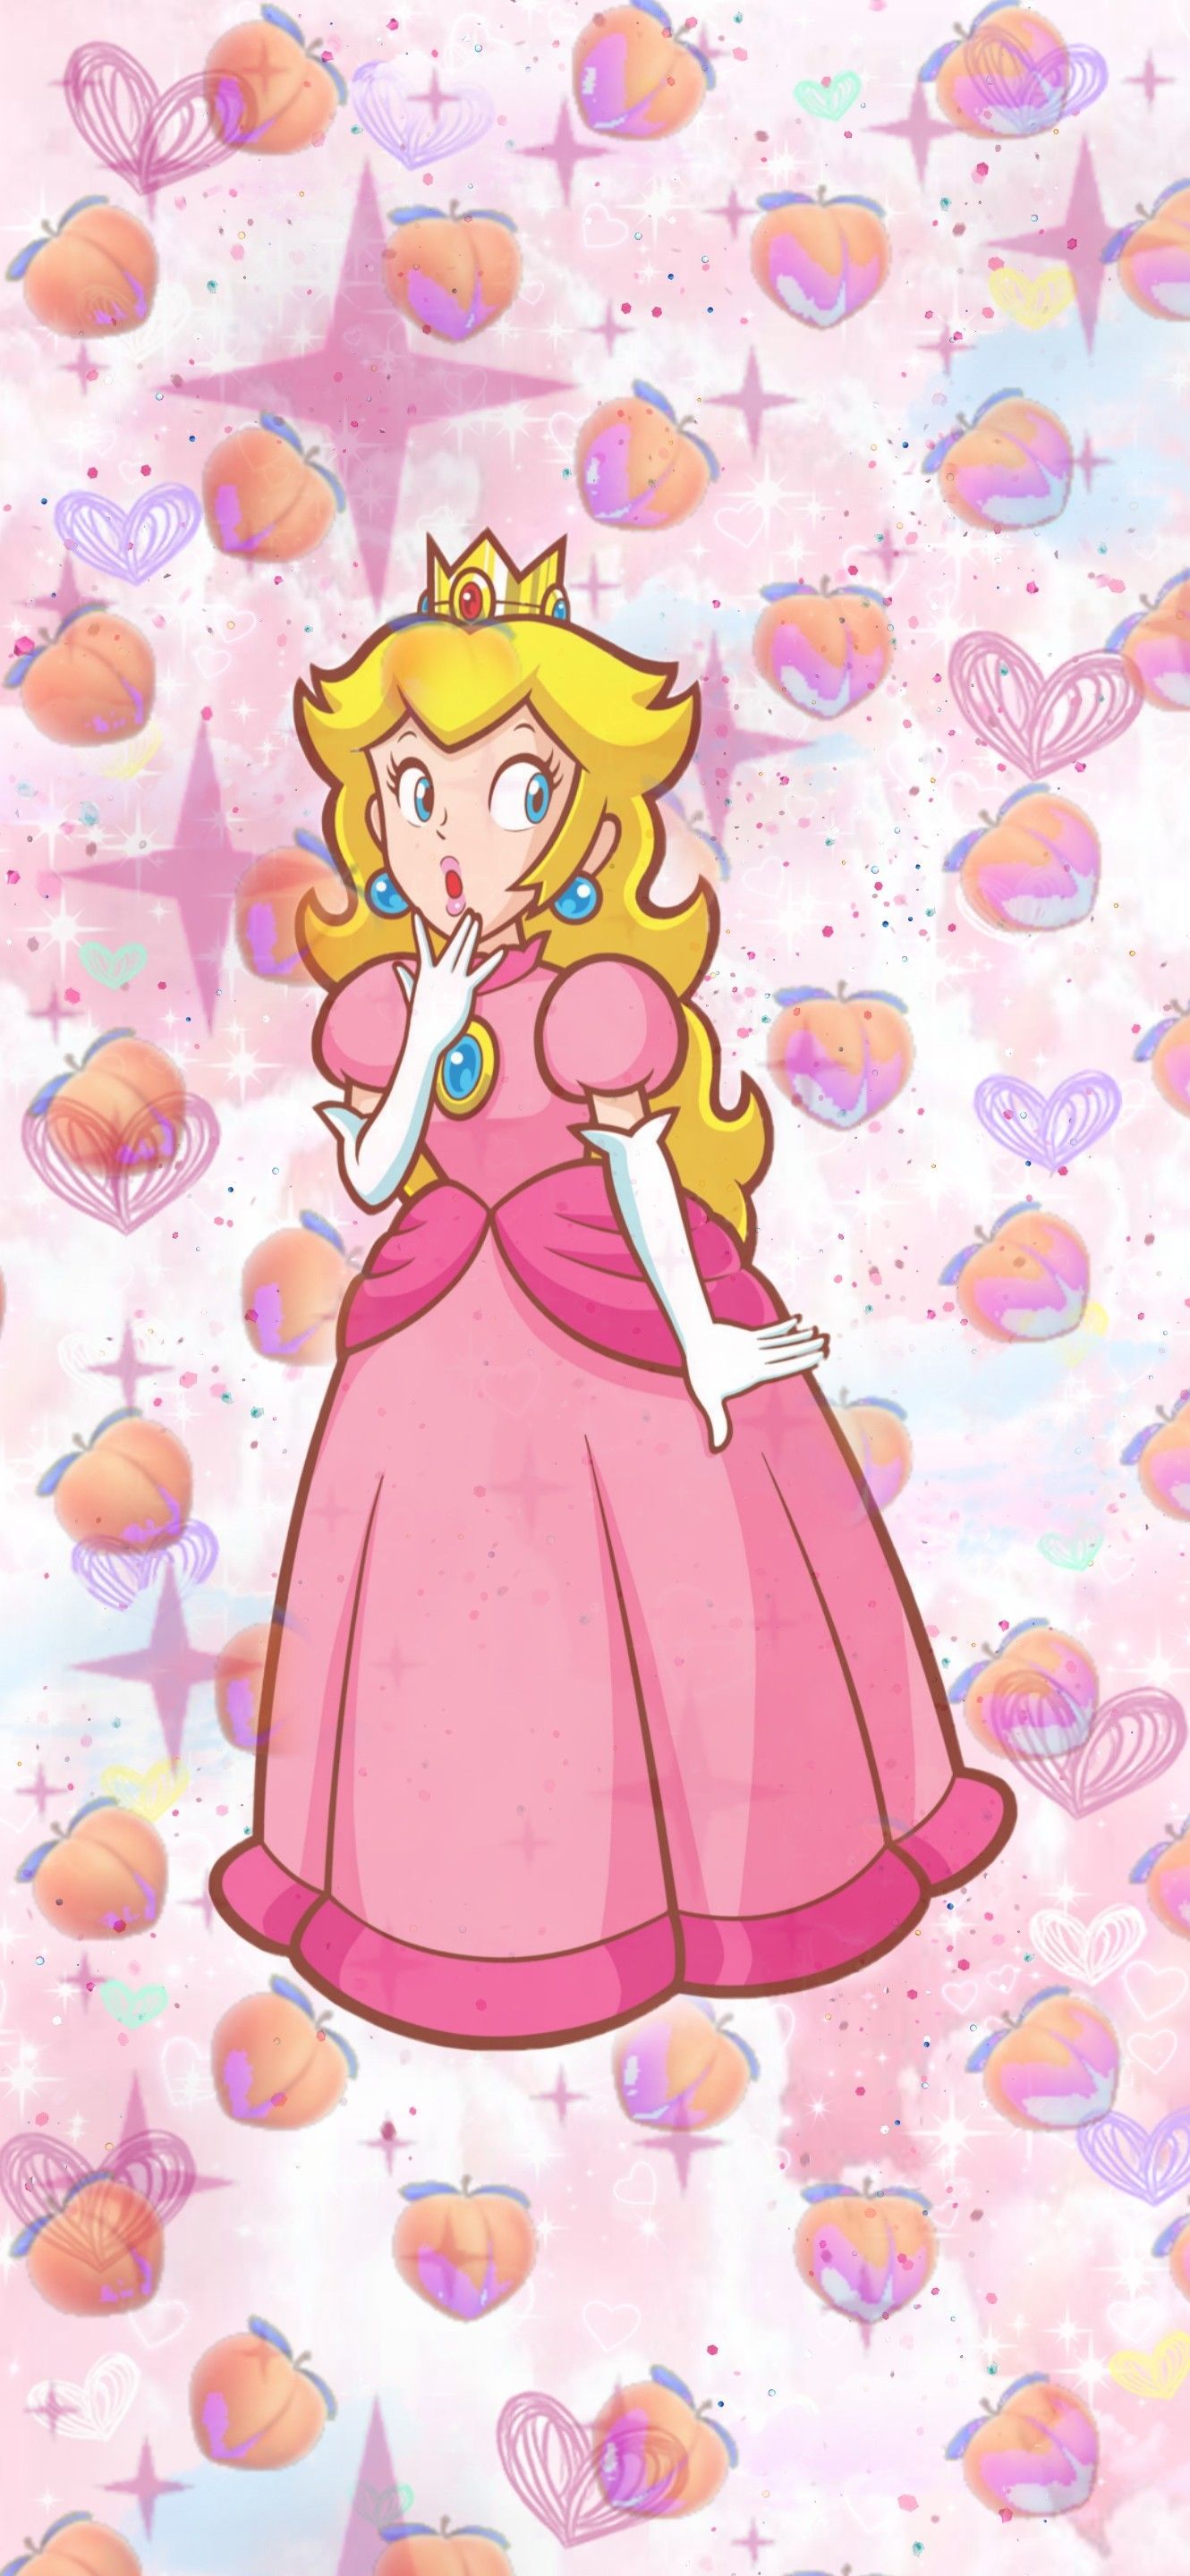 Princess Peach wallpaper I made for my phone! - Princess Peach